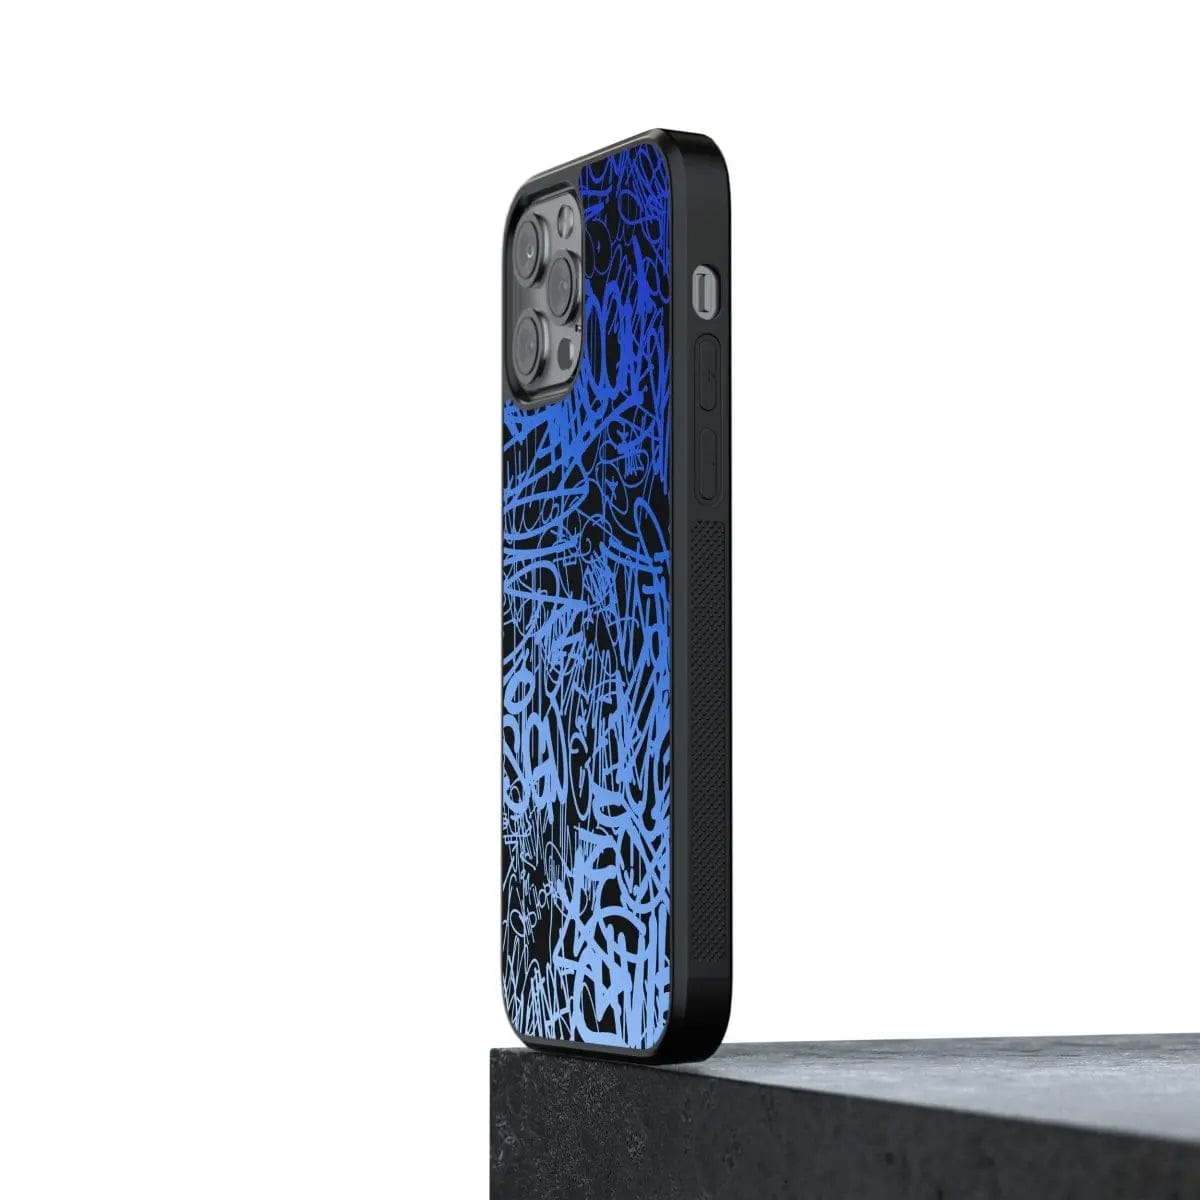 Phone case "Blue graffiti 1" - Artcase